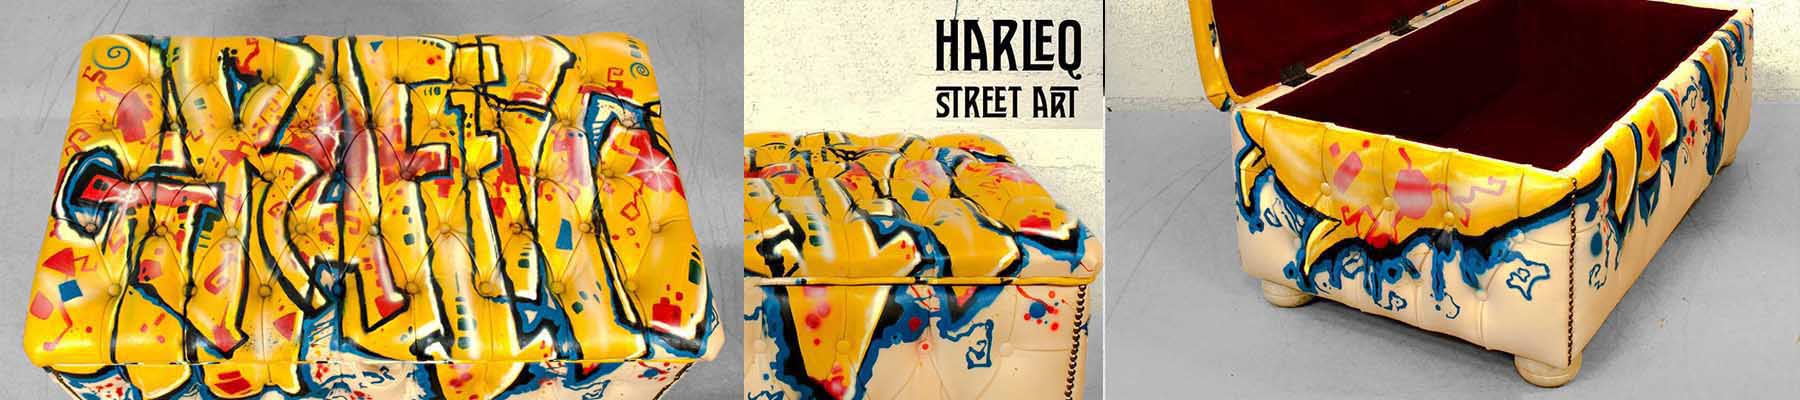 poggiapiedi tavolini chester moderni pelli colorate disegnate graffiti street art